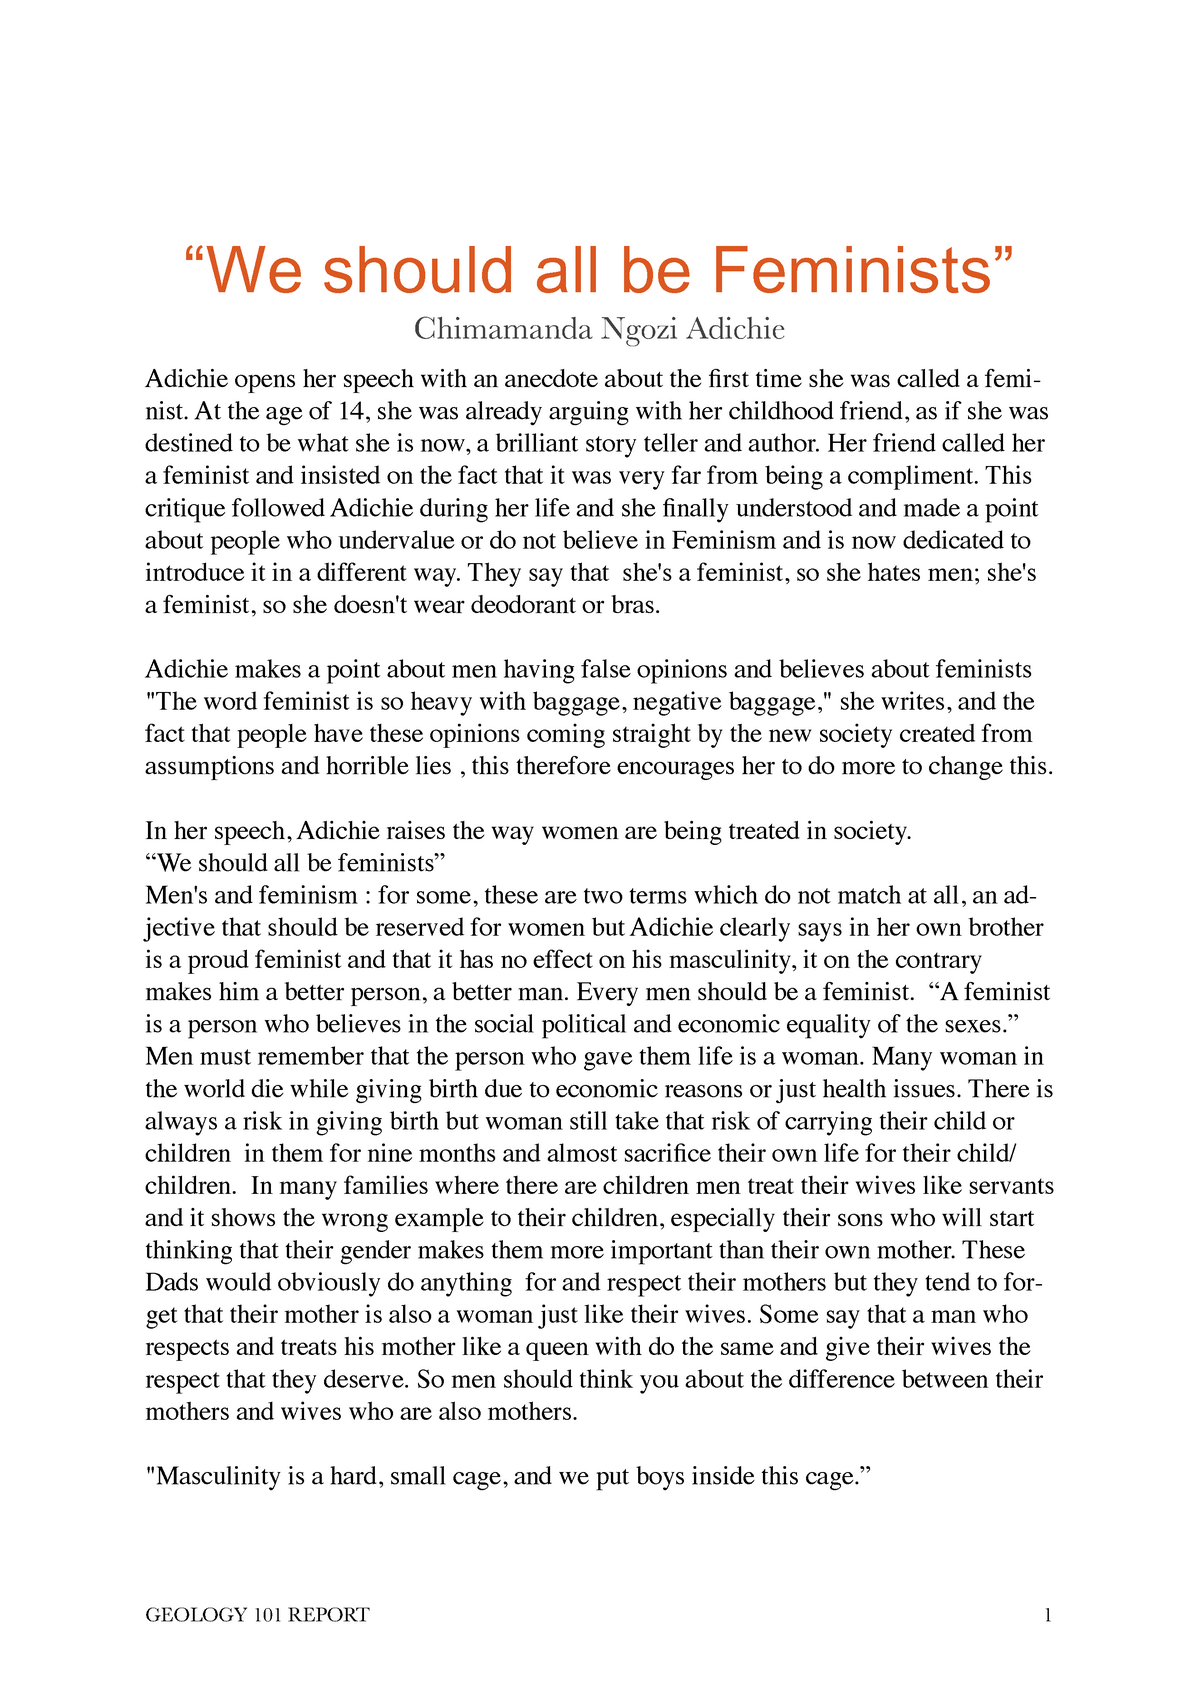 feminism easy essay